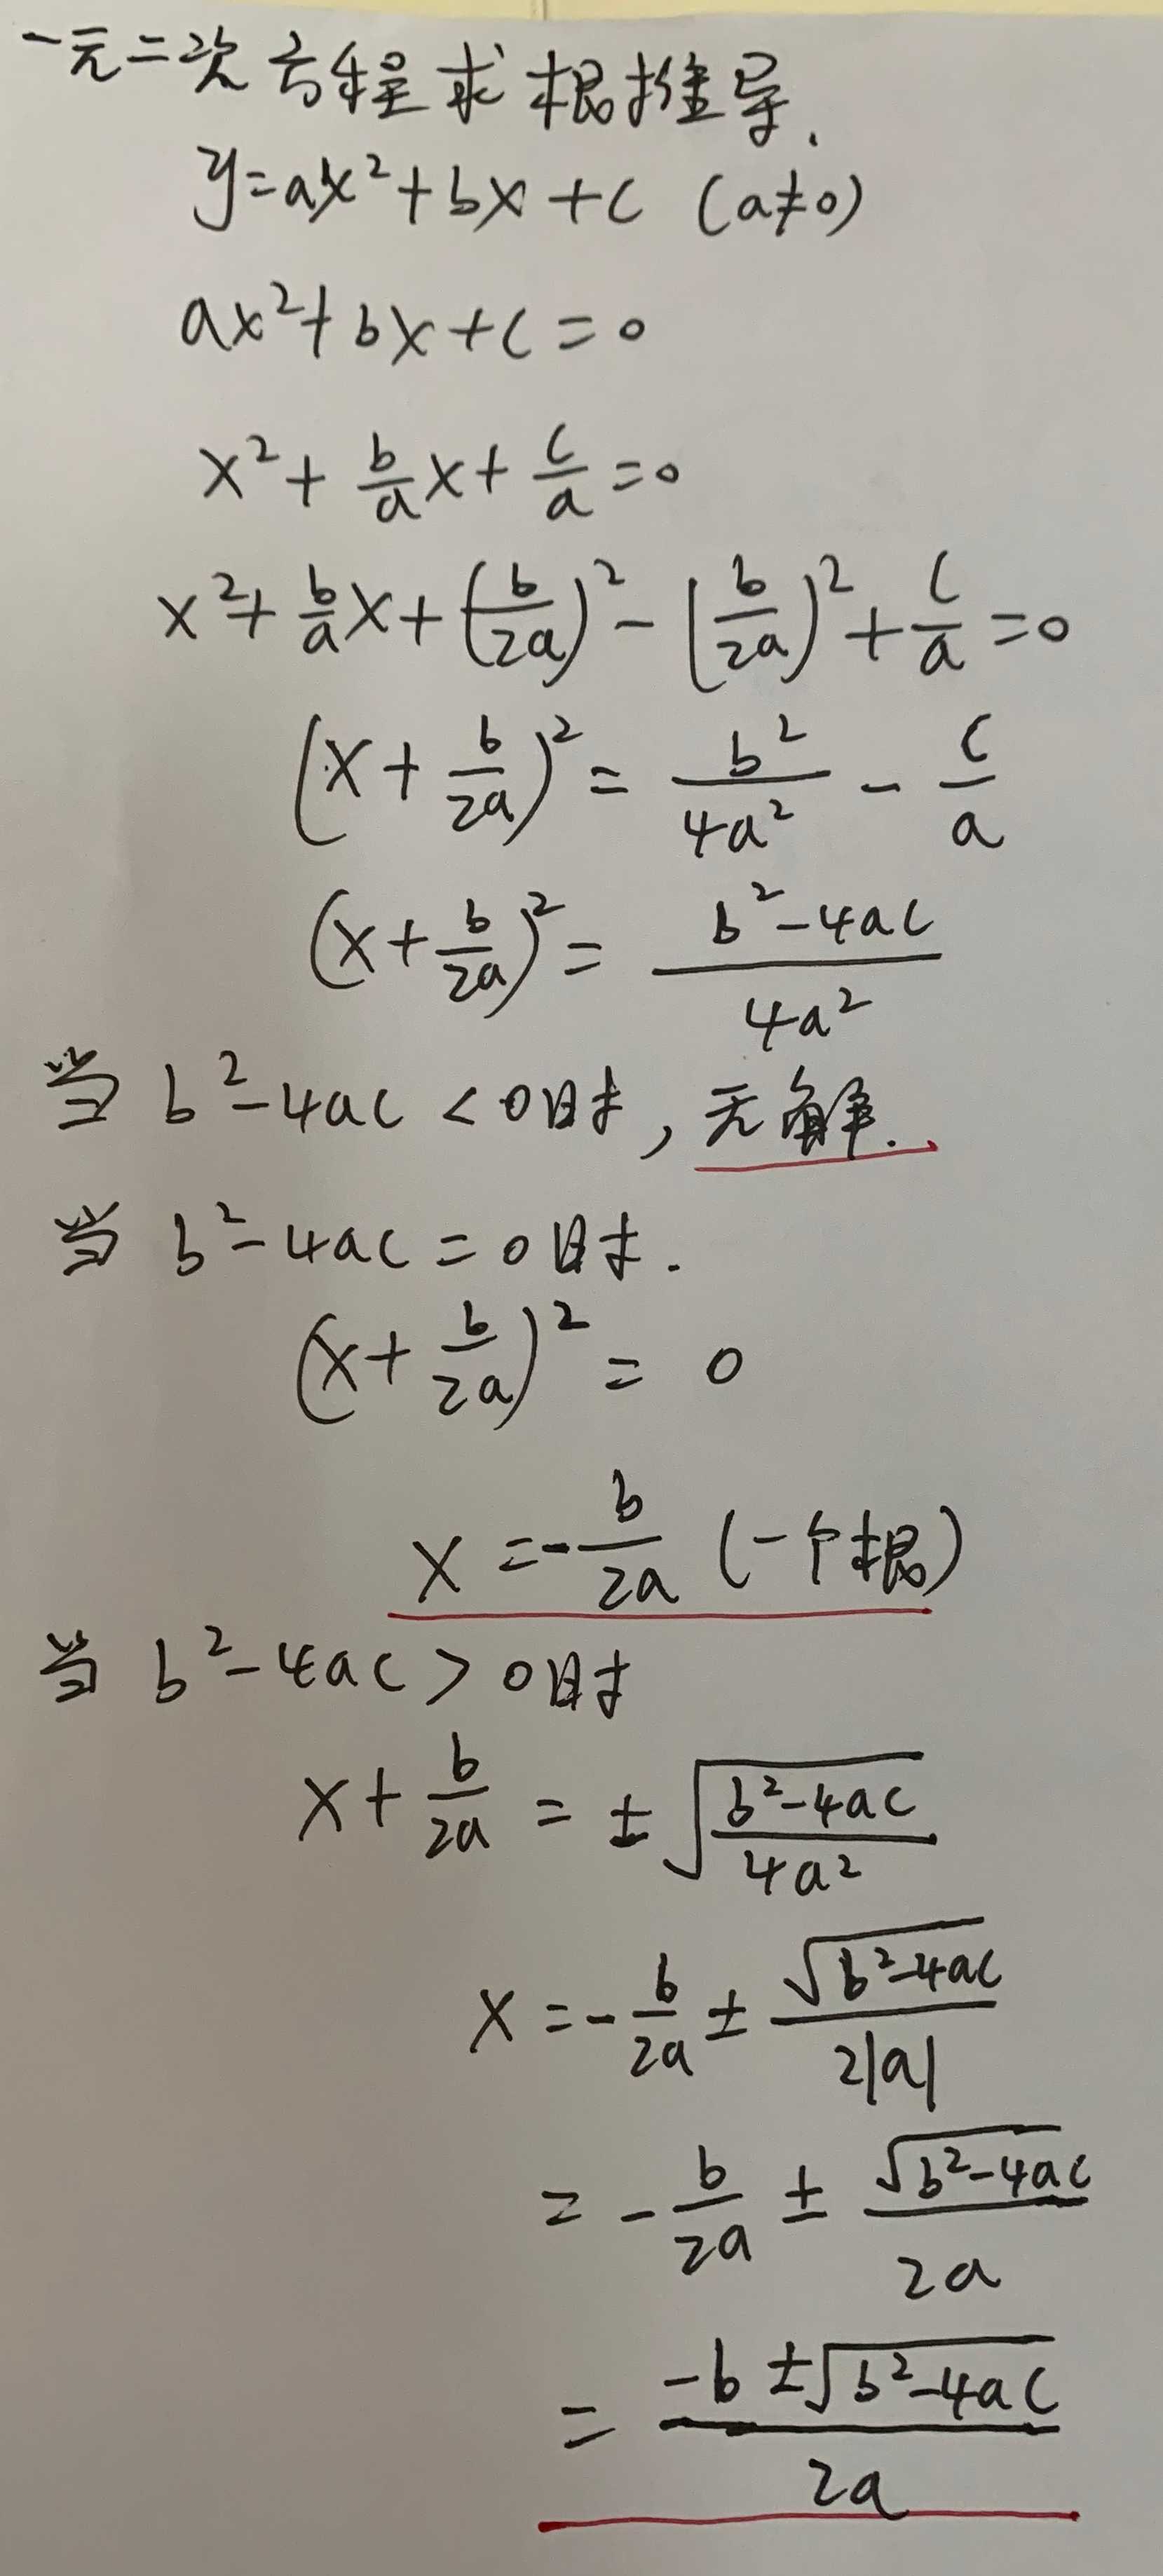 一元二次方程求根公式的详细推导过程_一元二次方程配方法